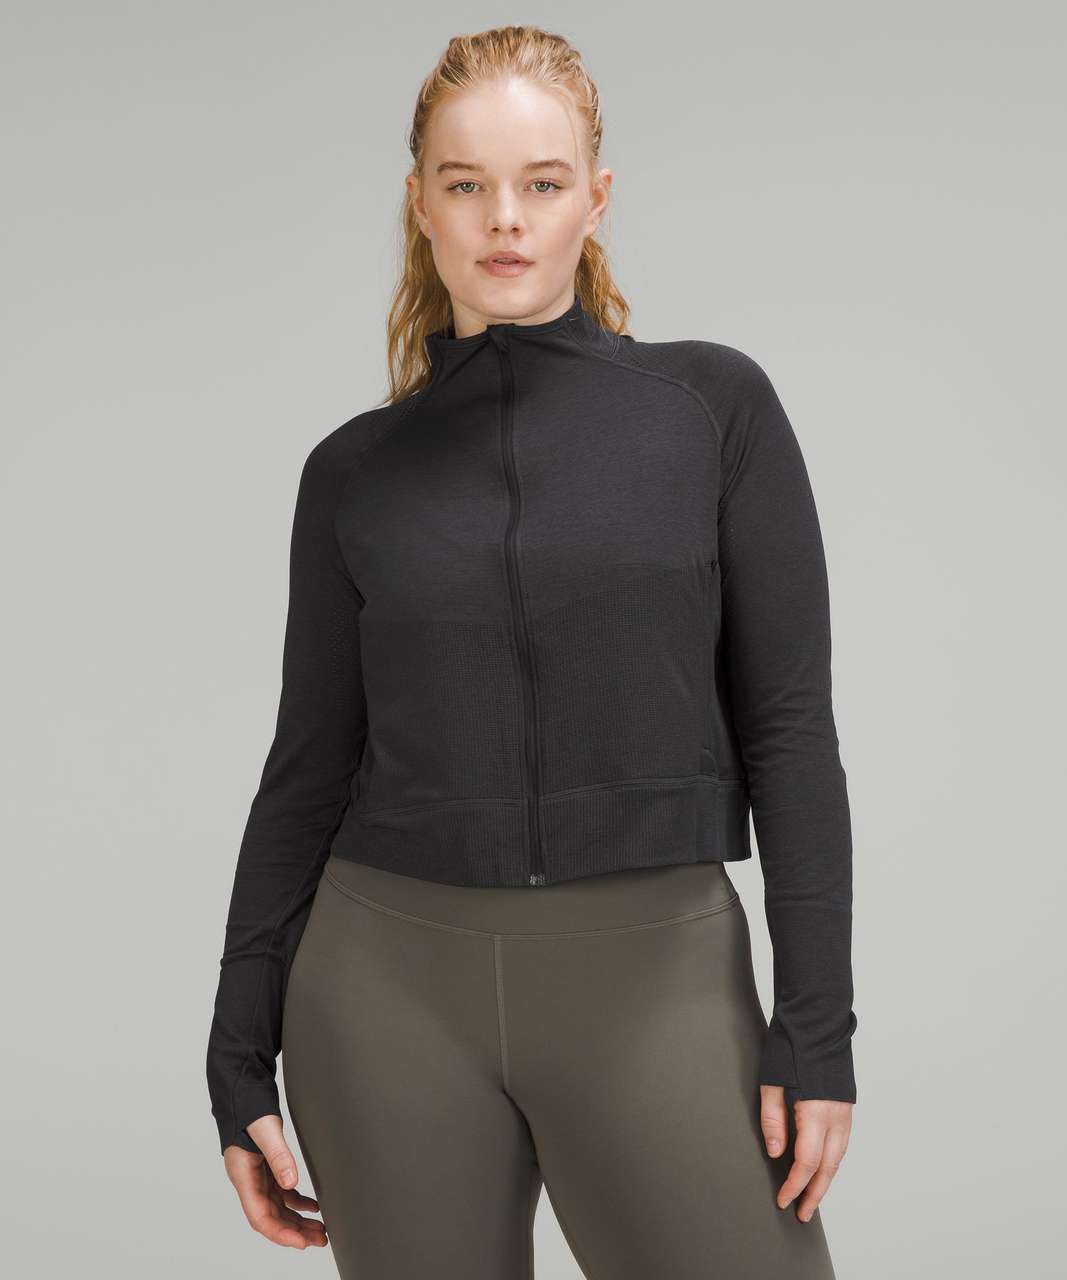 Lululemon Breathable Textured Knit Training Jacket - Black / Graphite Grey